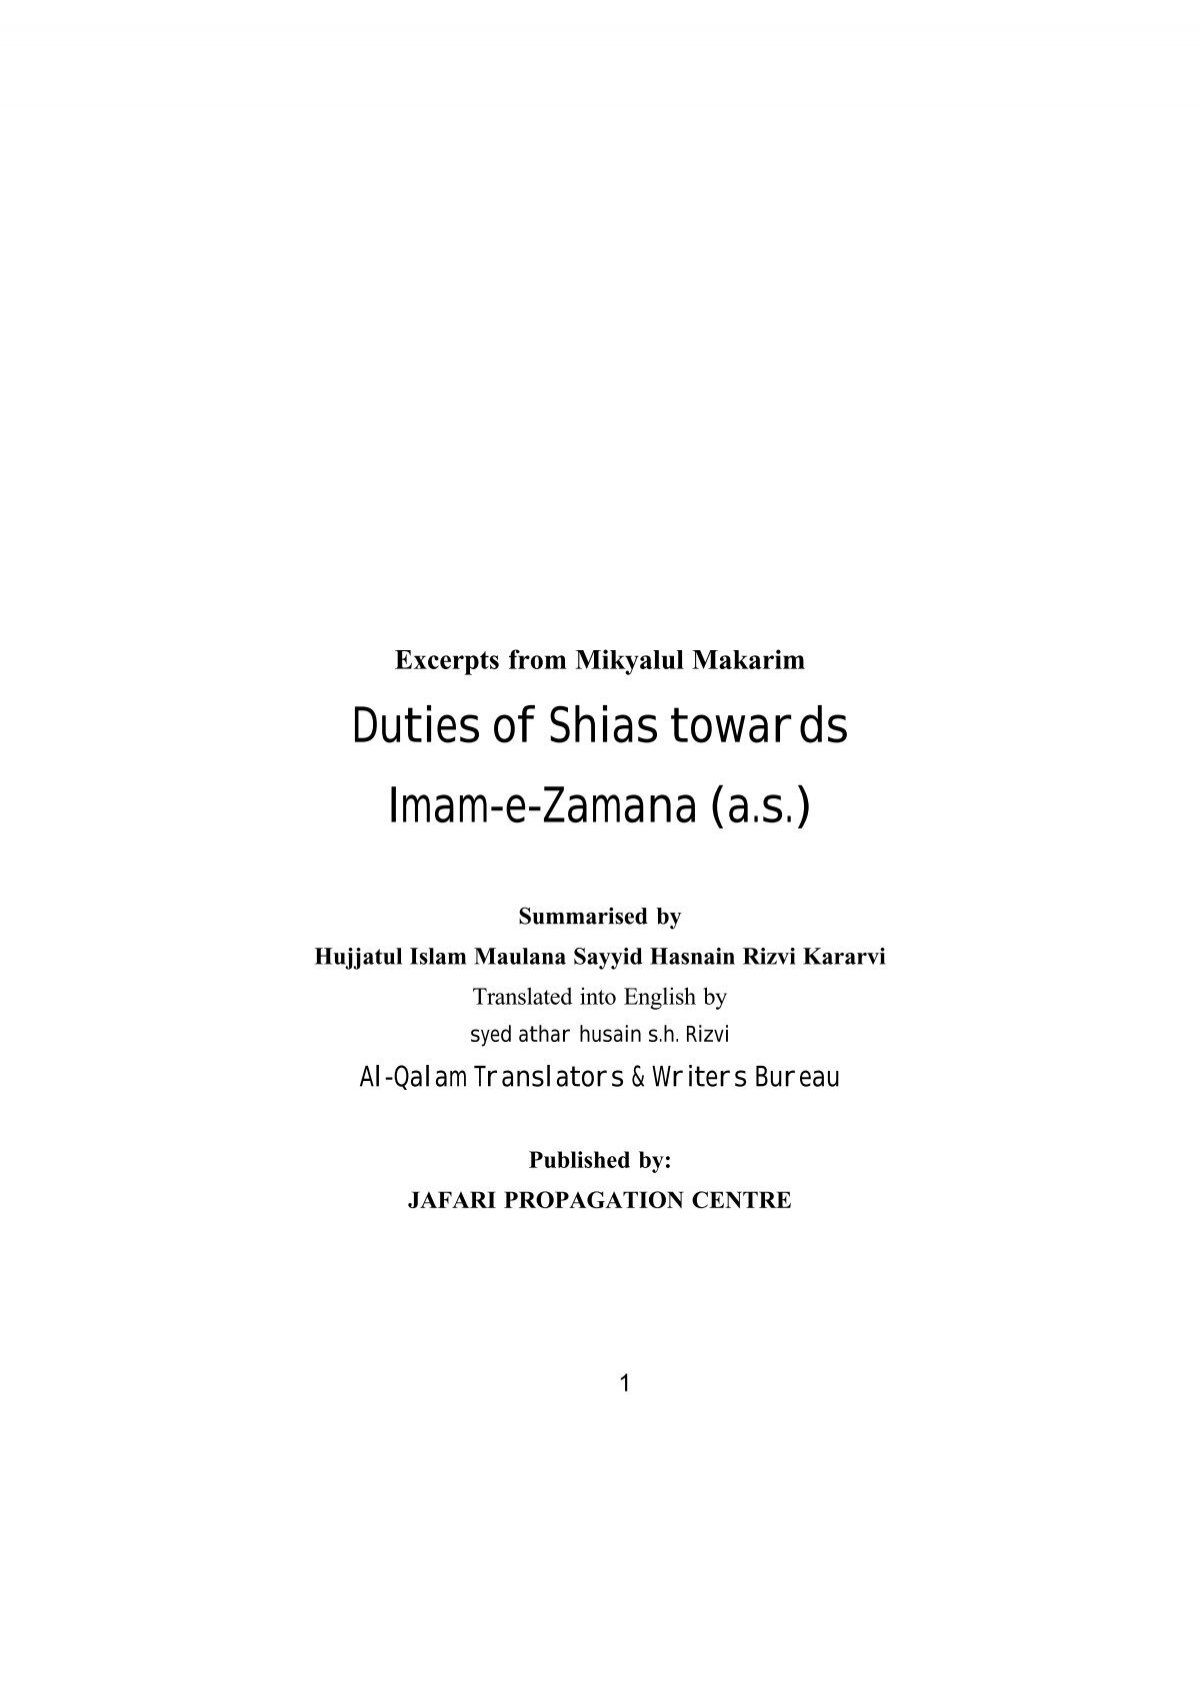 Duties Of Shias Towards Imam E Zamana A S Yusuf E Zehra